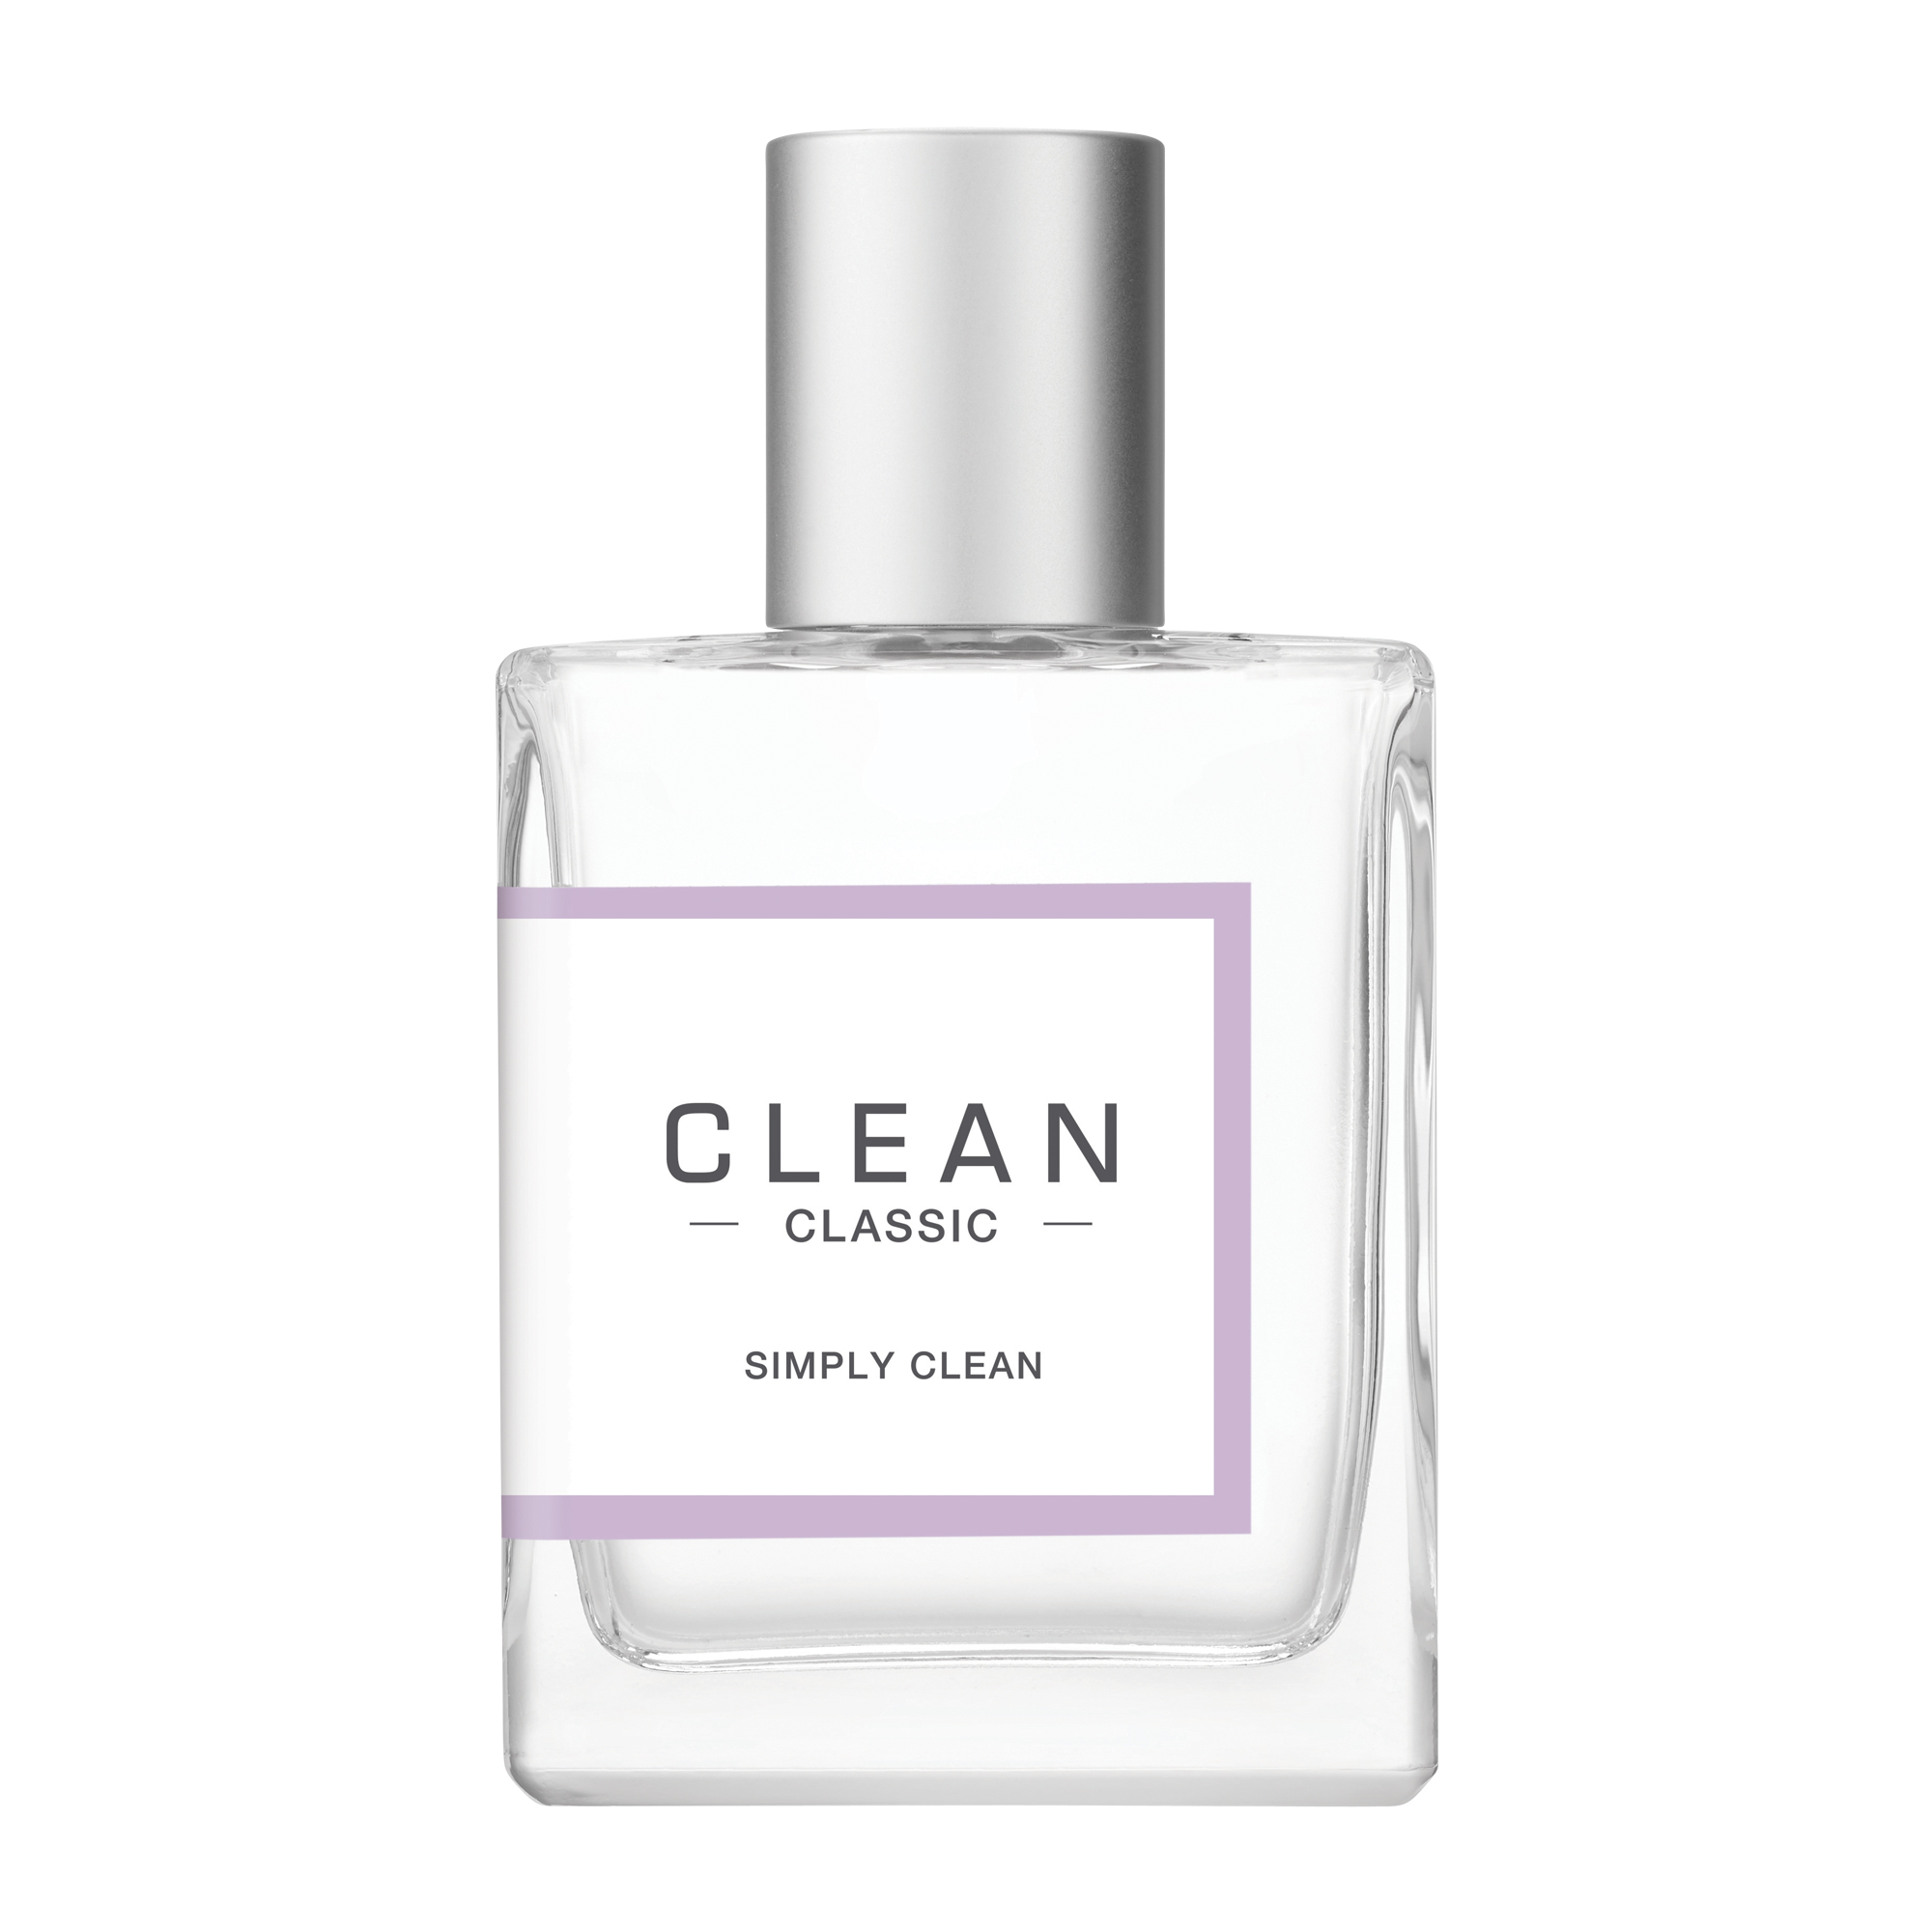 Simply Clean Eau de Parfum